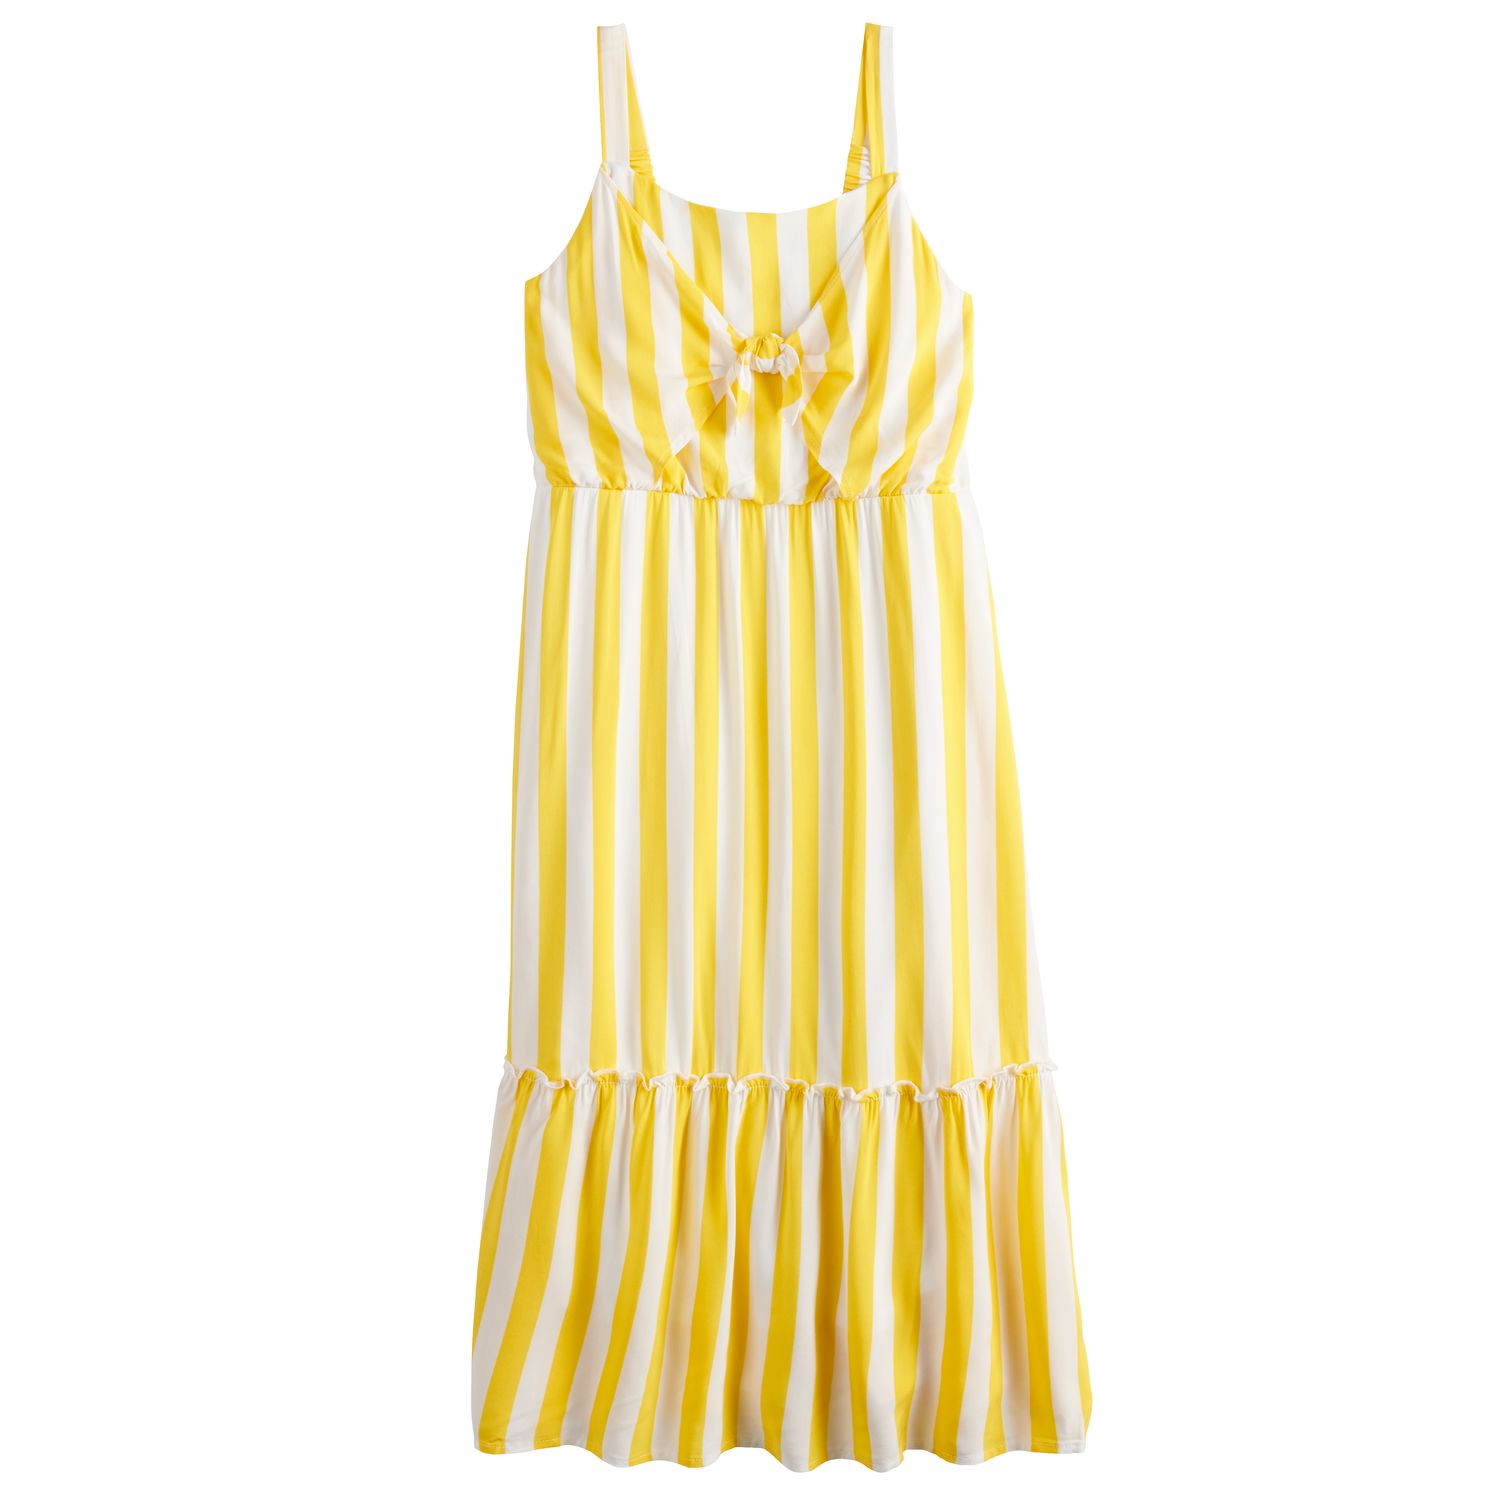 yellow dress size 20